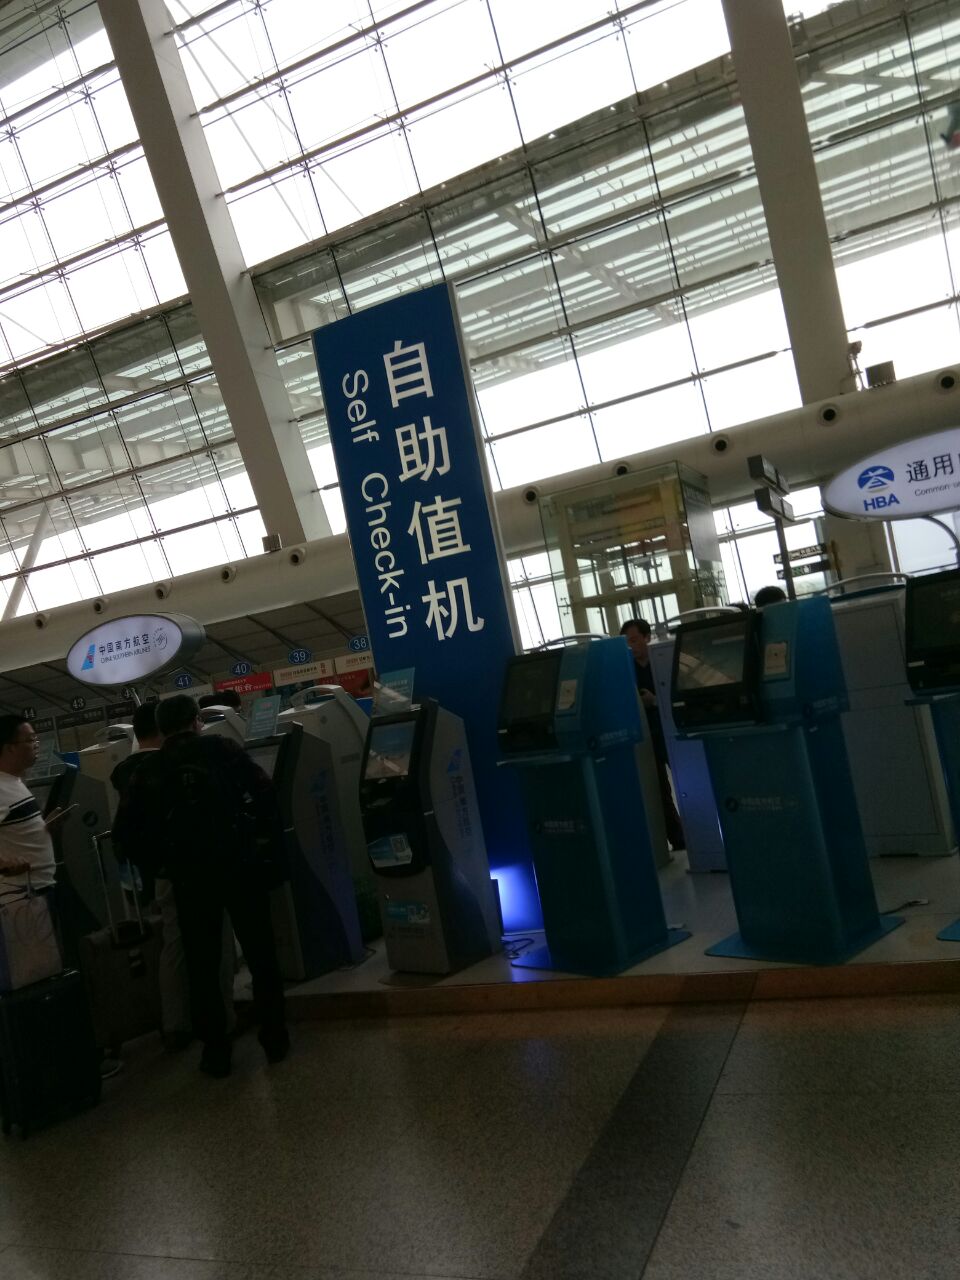 武汉天河机场位于汉口黄陂区,里面设施齐全,宽敞明亮的候机厅,安检